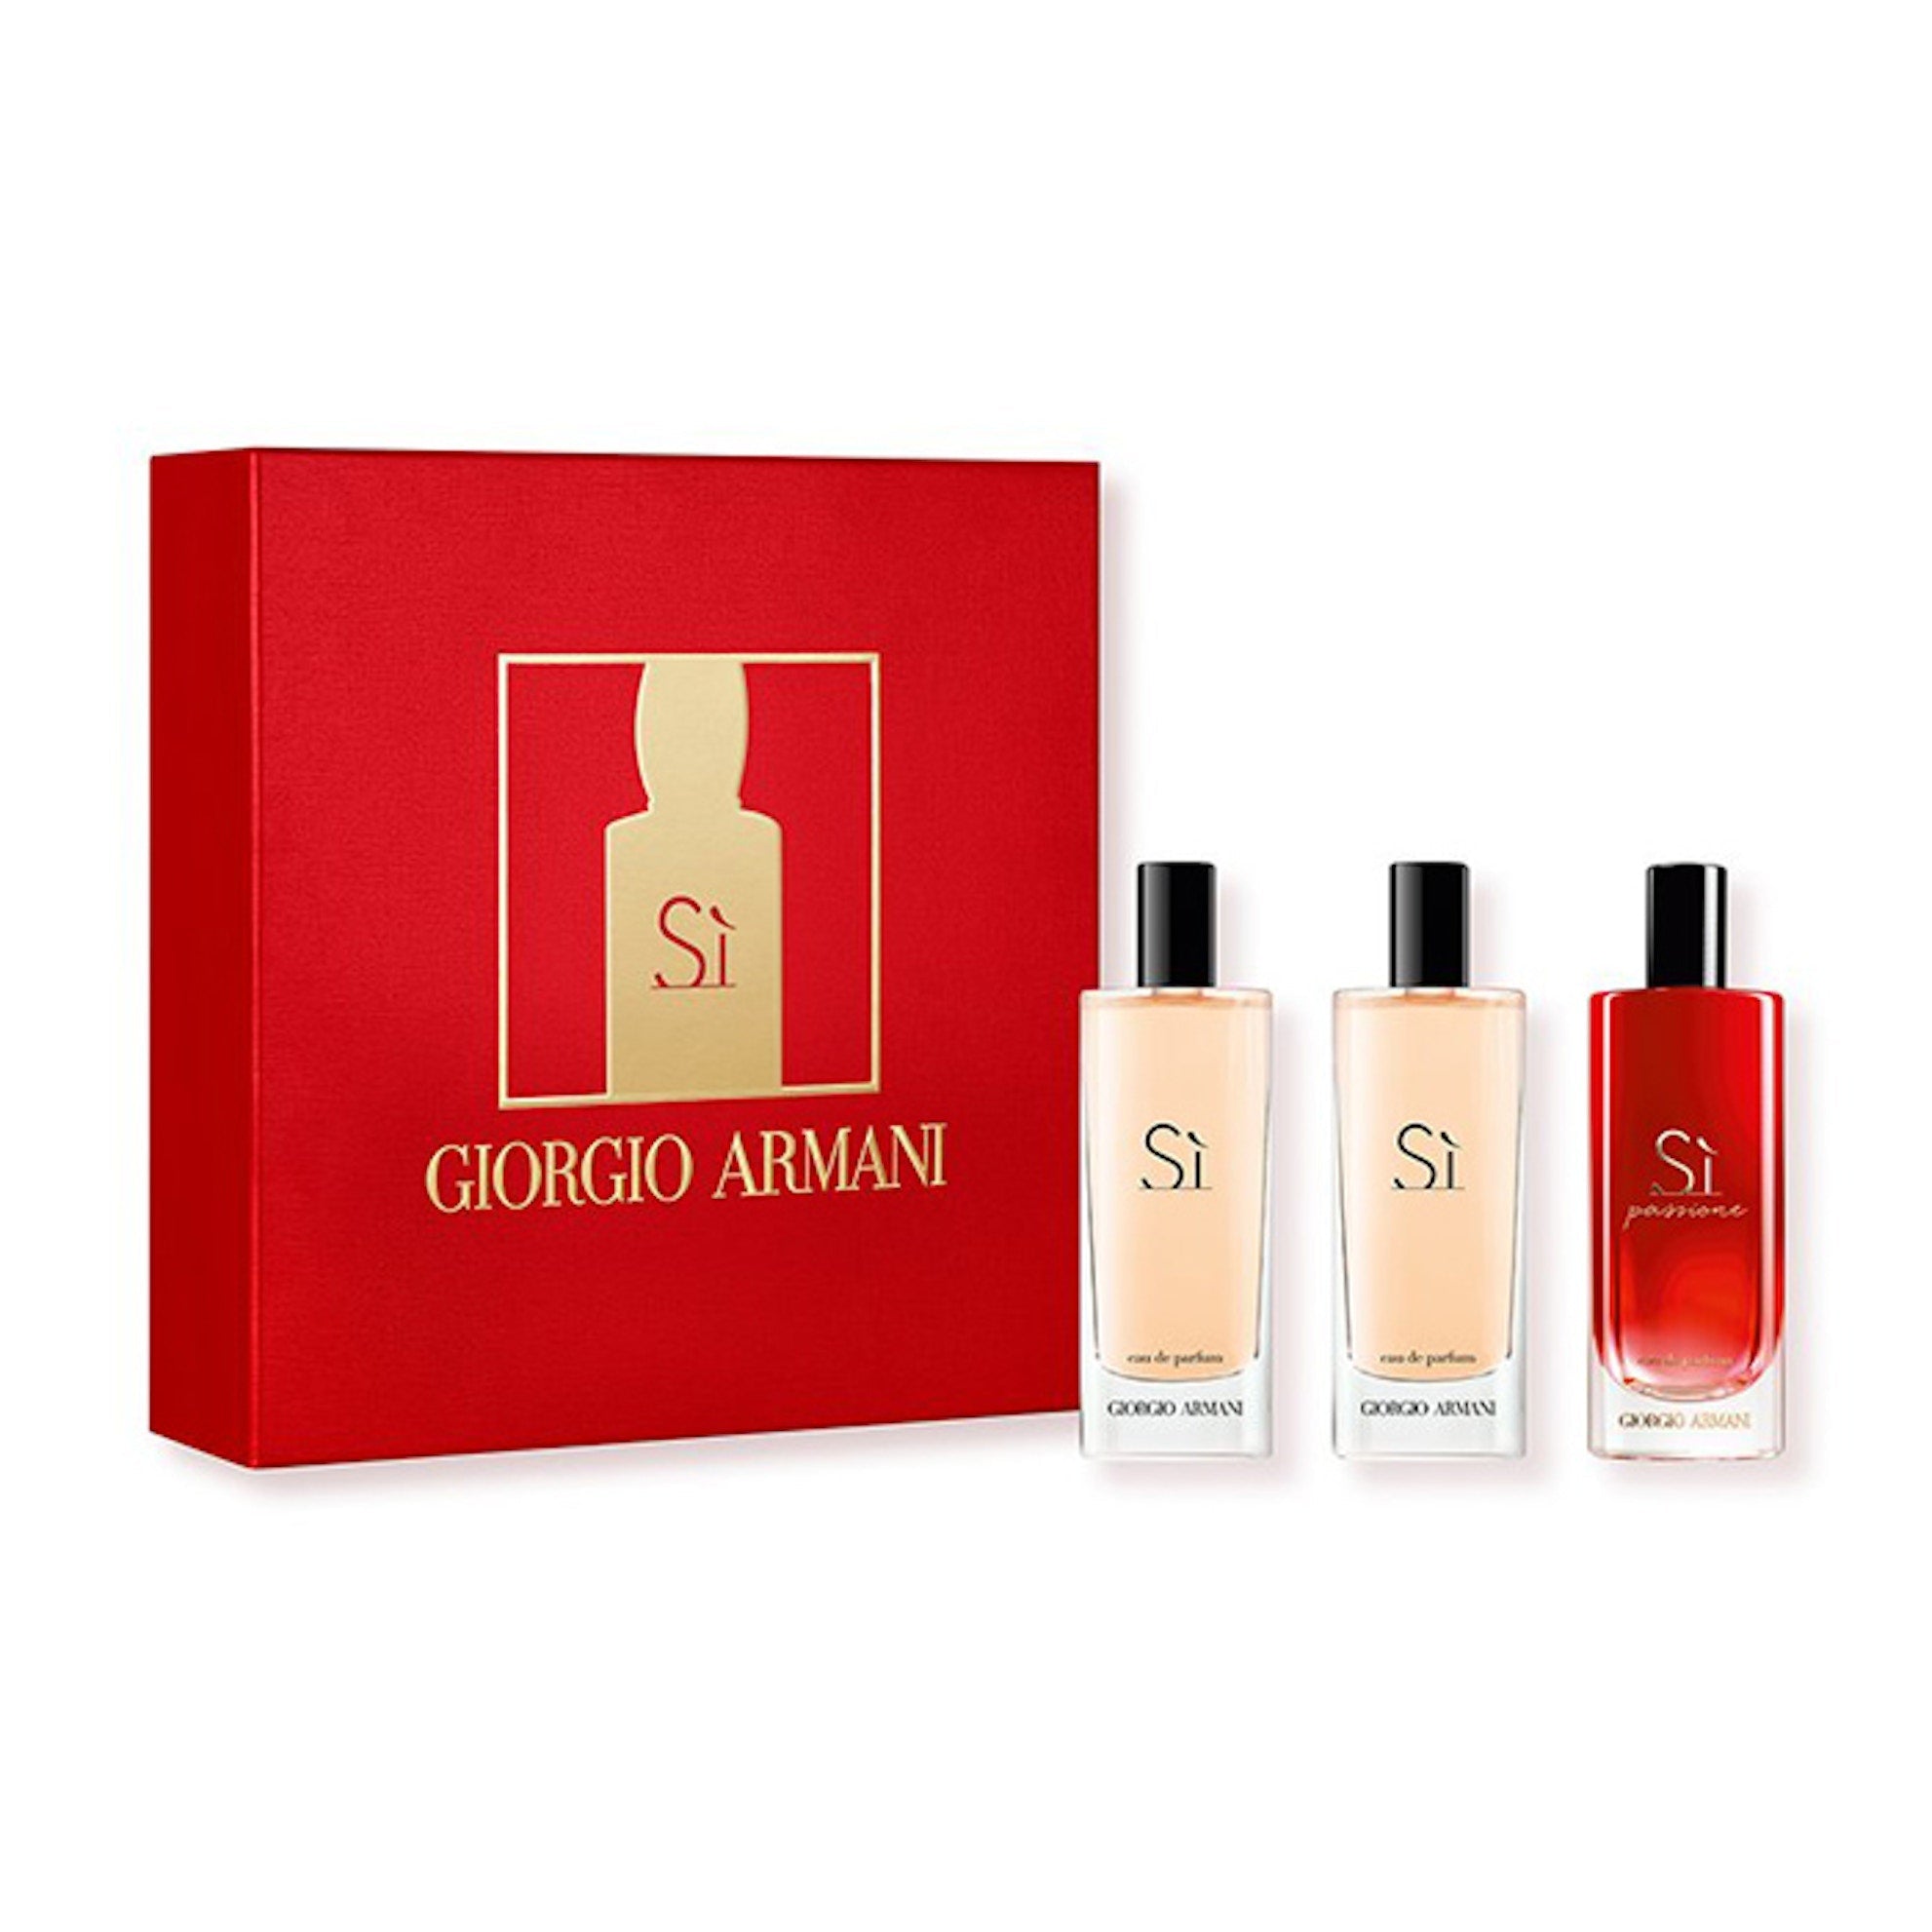 Giorgio Armani Si Discovery Set | My Perfume Shop Australia